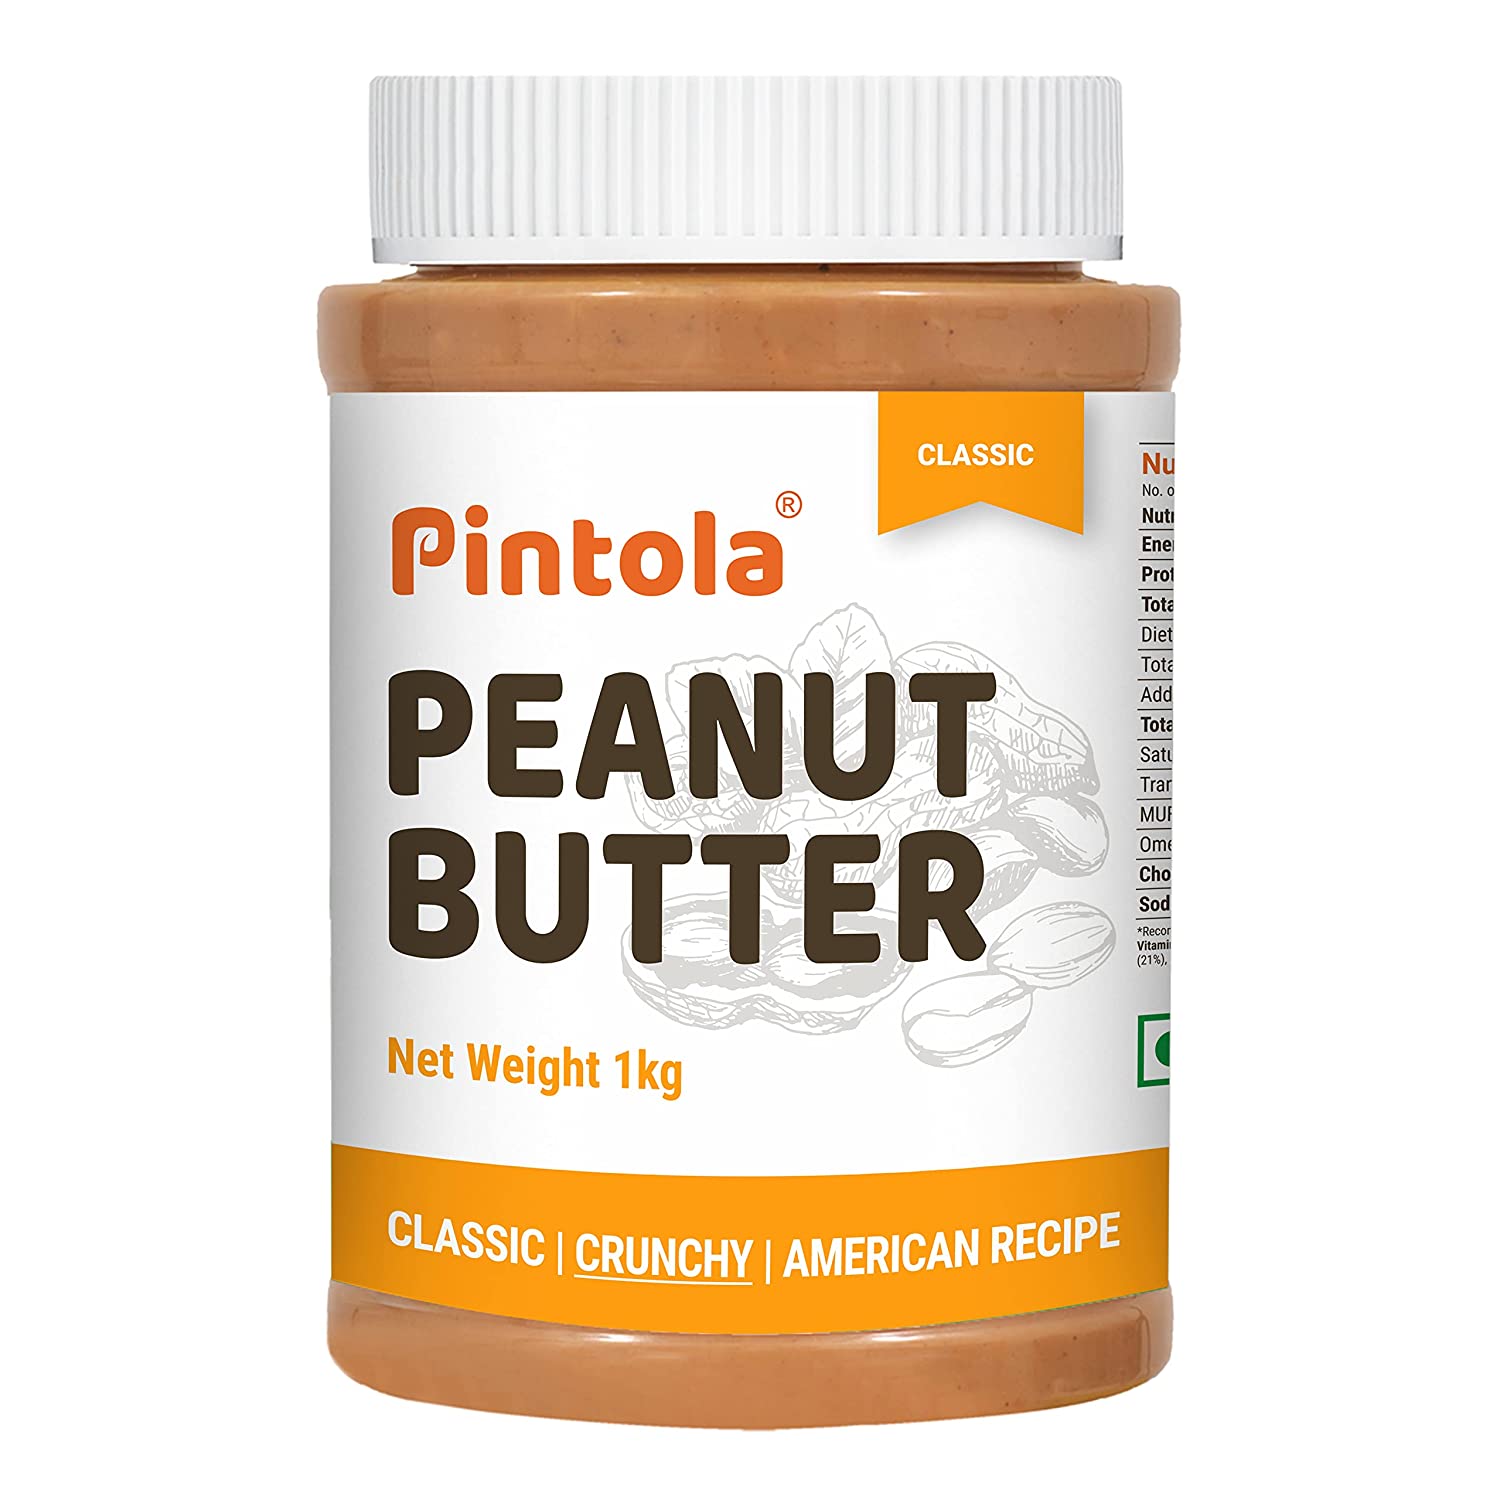 Pintola Classic Crunchy Peanut Butter 1kg